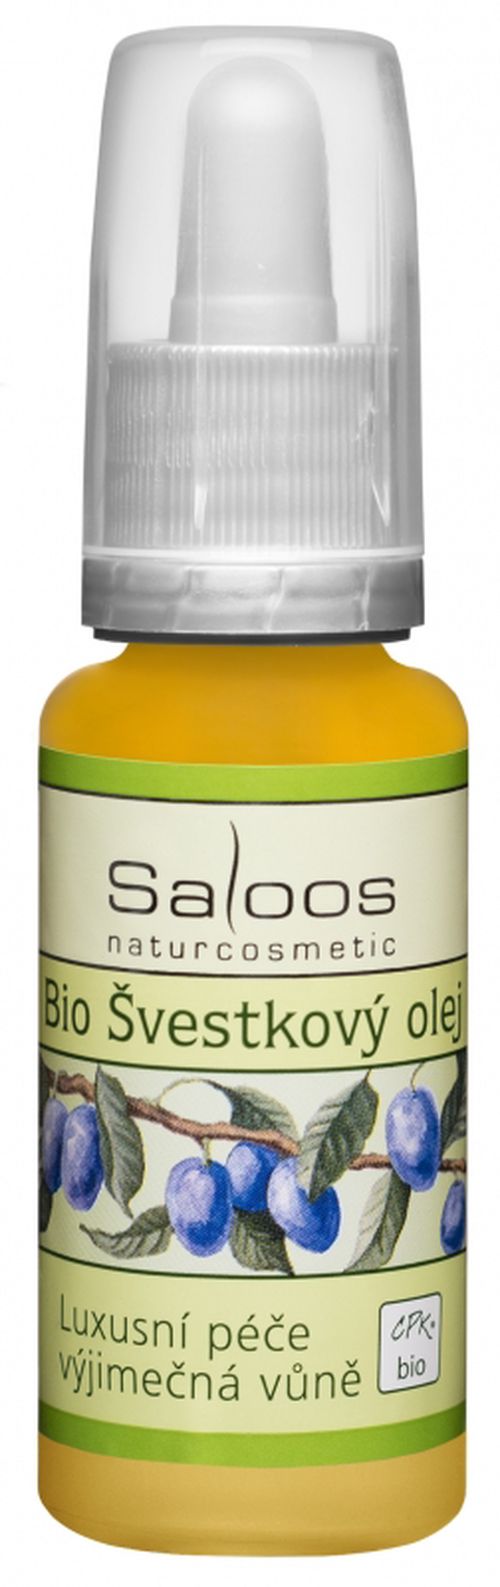 Saloos Bio Švestkový olej, 20ml